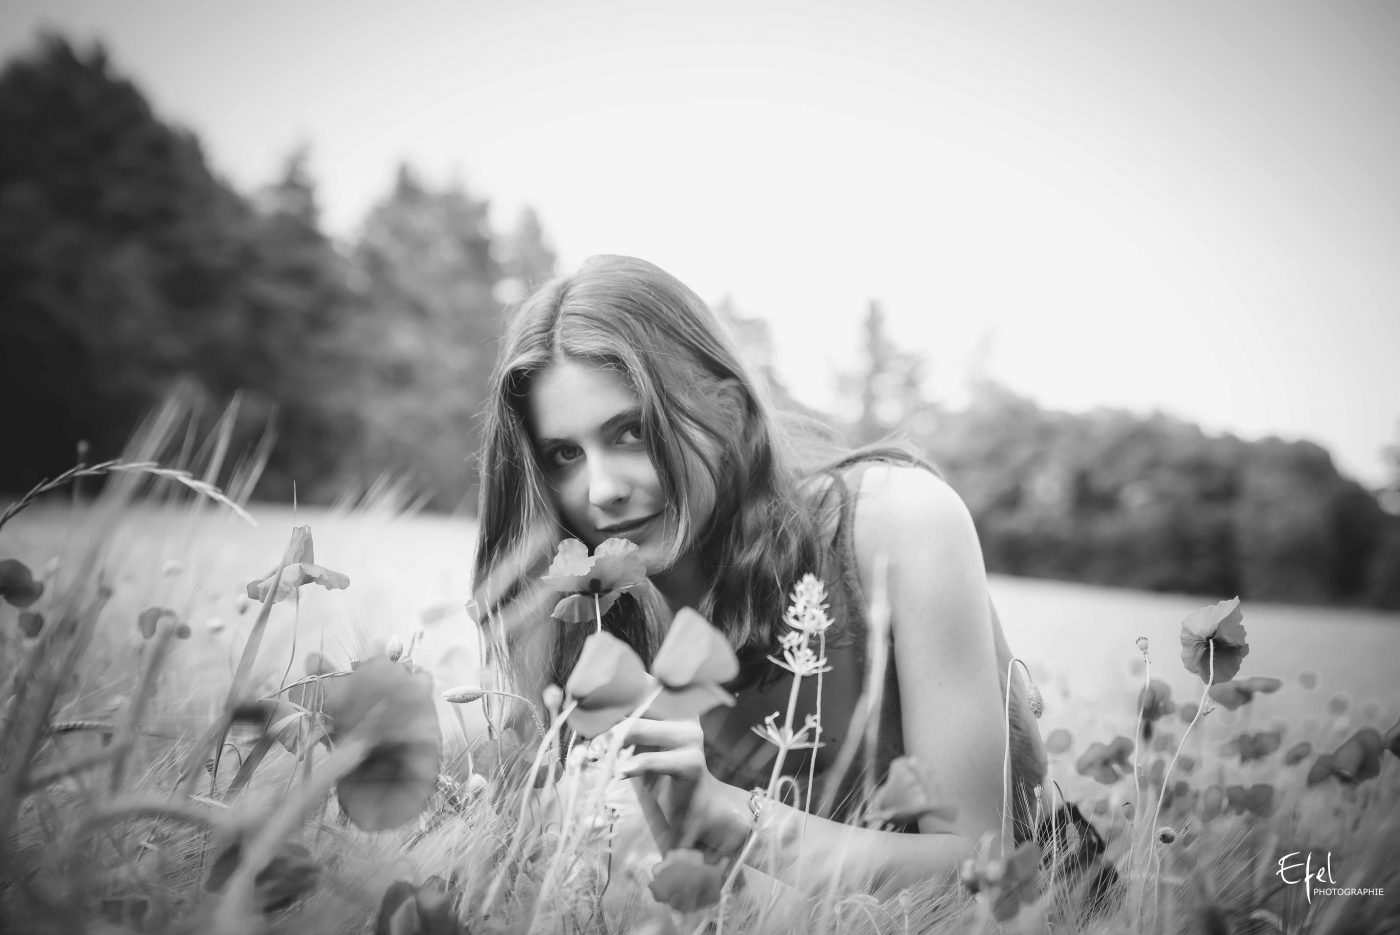 photo noir et blanc portrait jeune femme et fleurs photographe 05